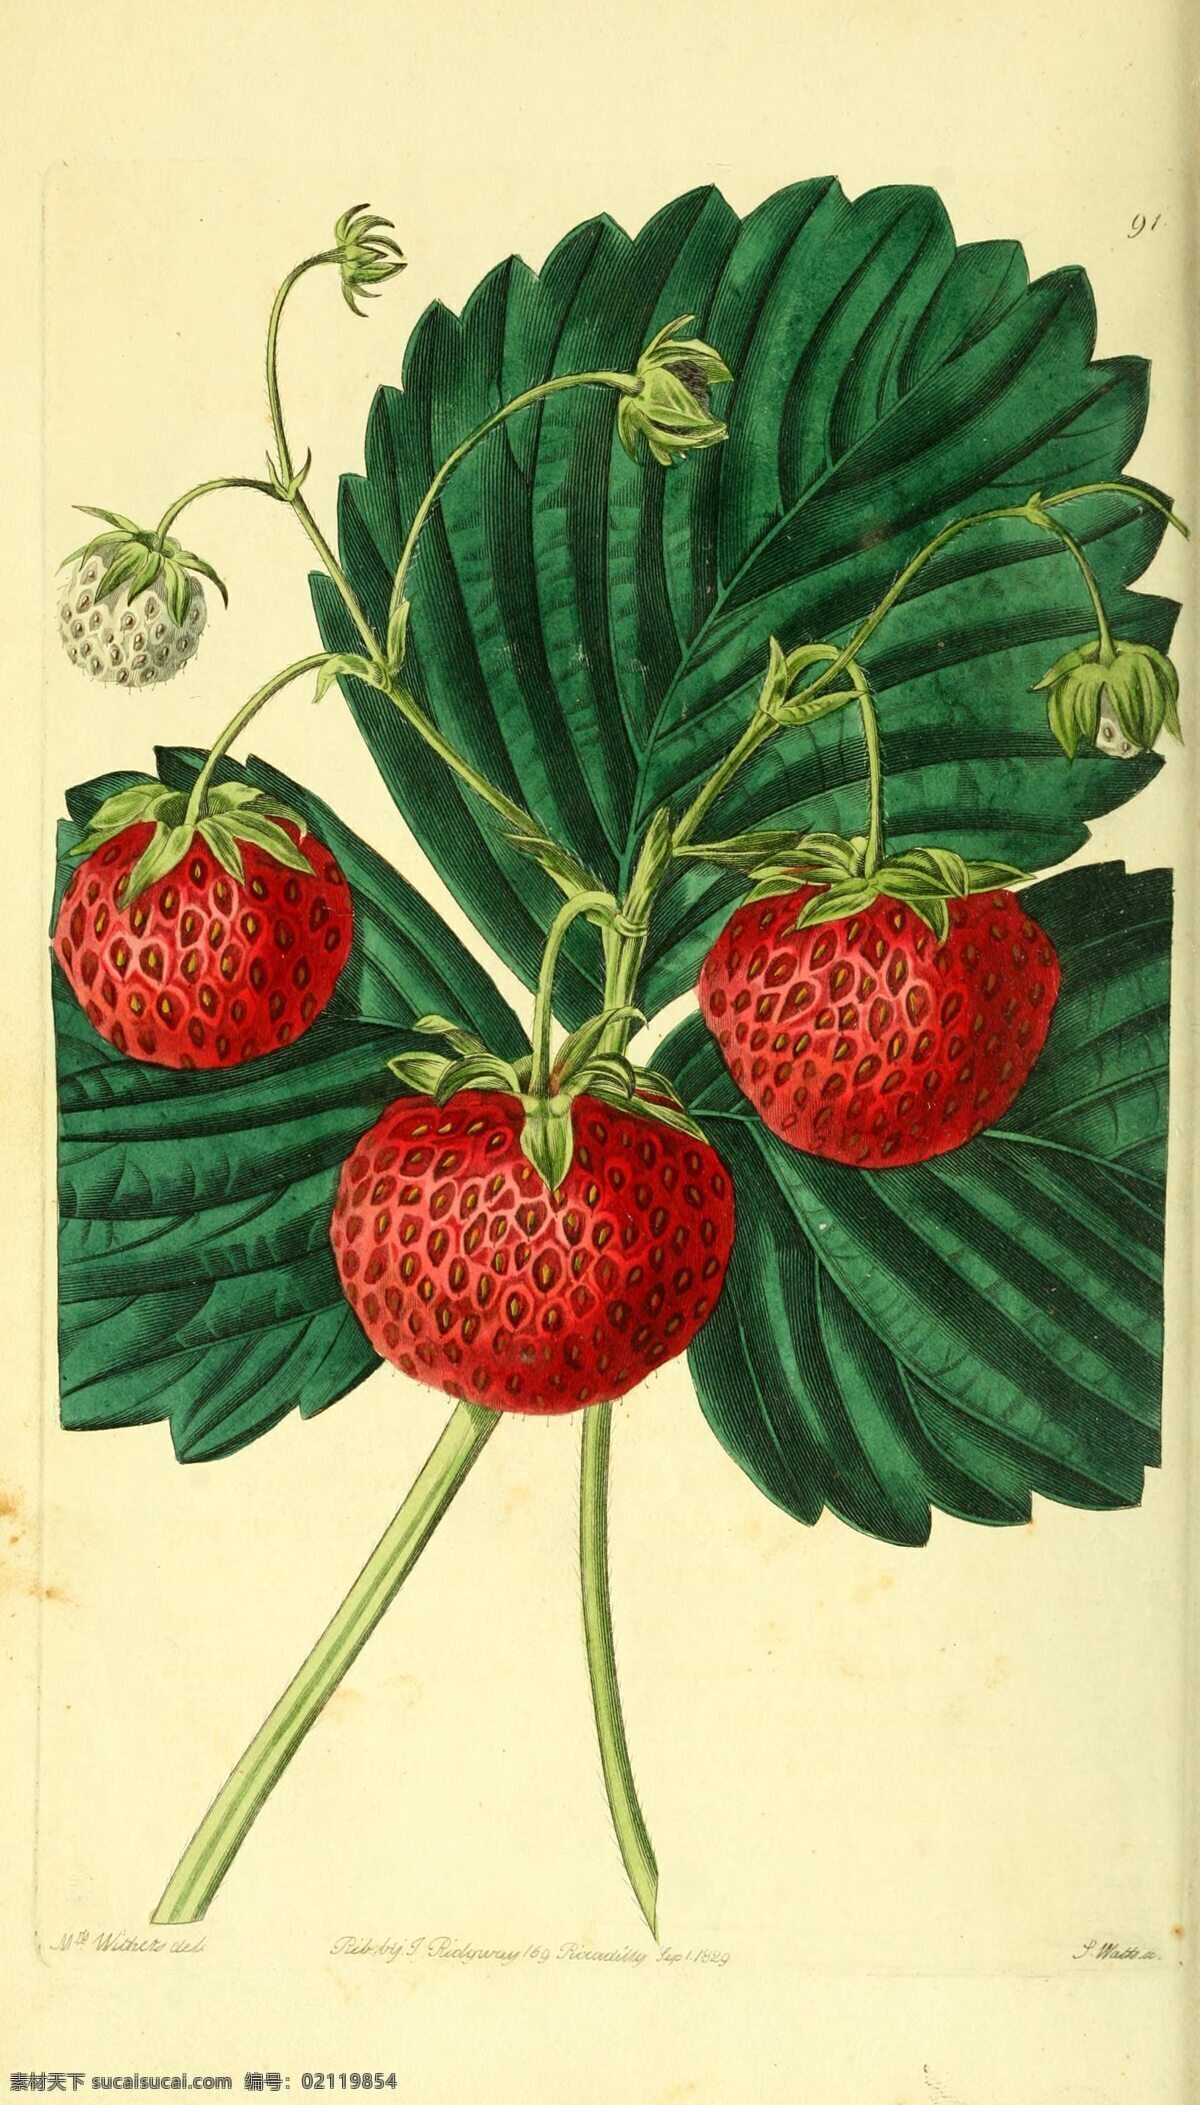 红色草莓插画 植物插画绘制 写实水果插画 写实插画 水果插画 植株插画 插画图片